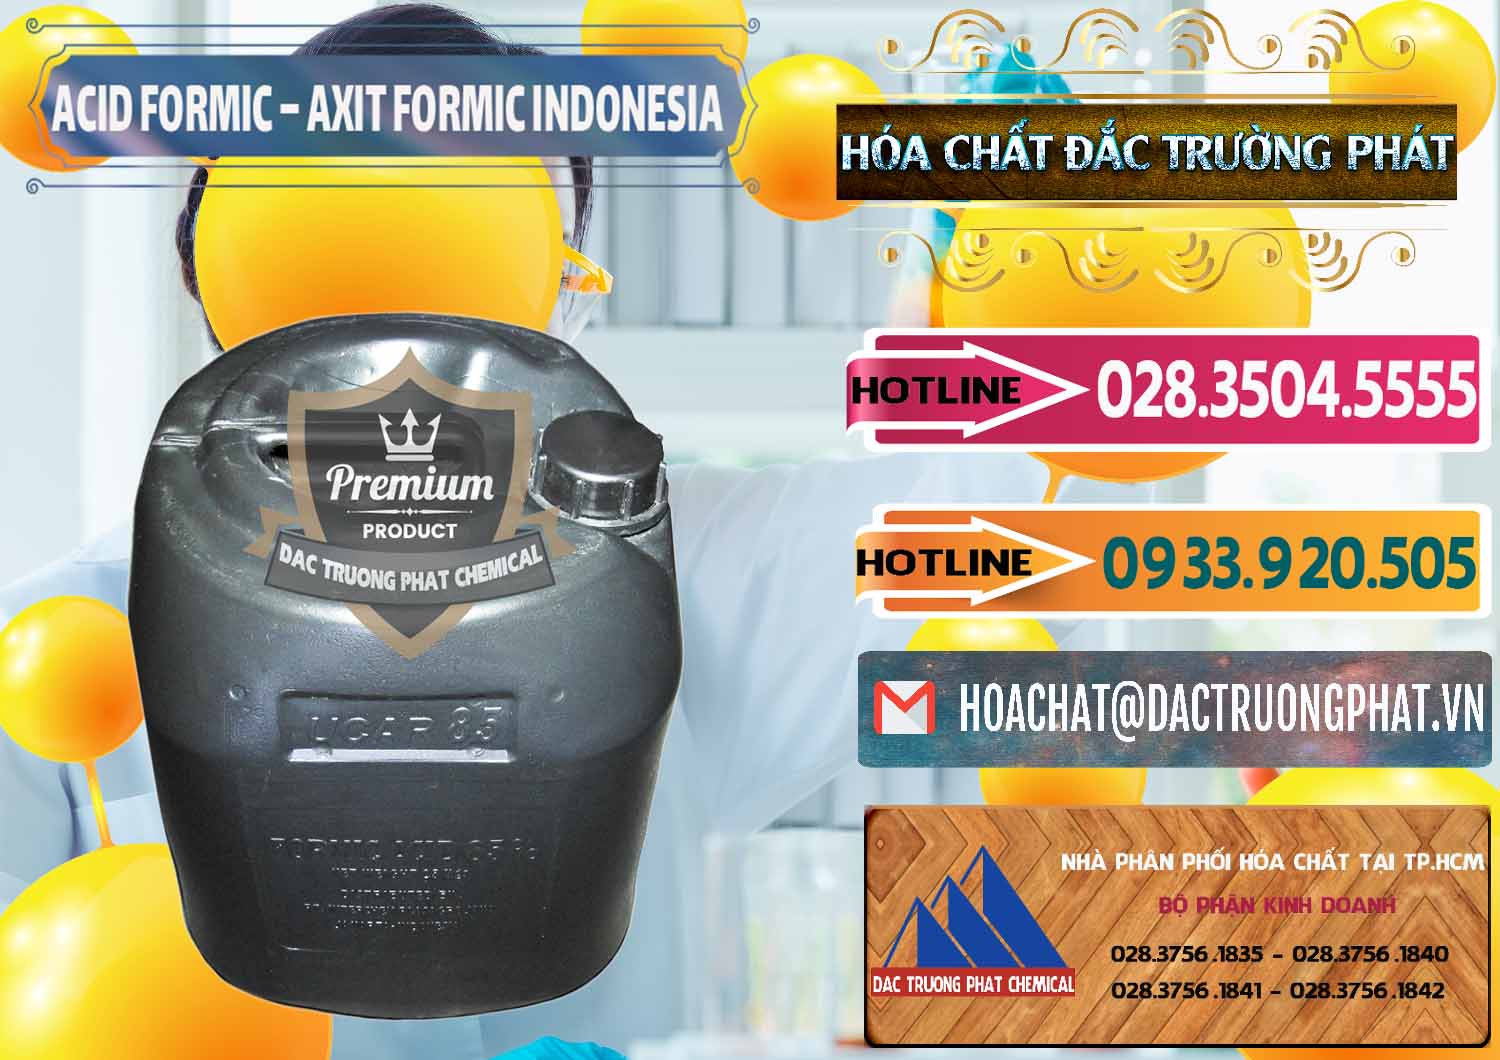 Chuyên bán ( phân phối ) Acid Formic - Axit Formic Indonesia - 0026 - Cty phân phối và cung cấp hóa chất tại TP.HCM - dactruongphat.vn